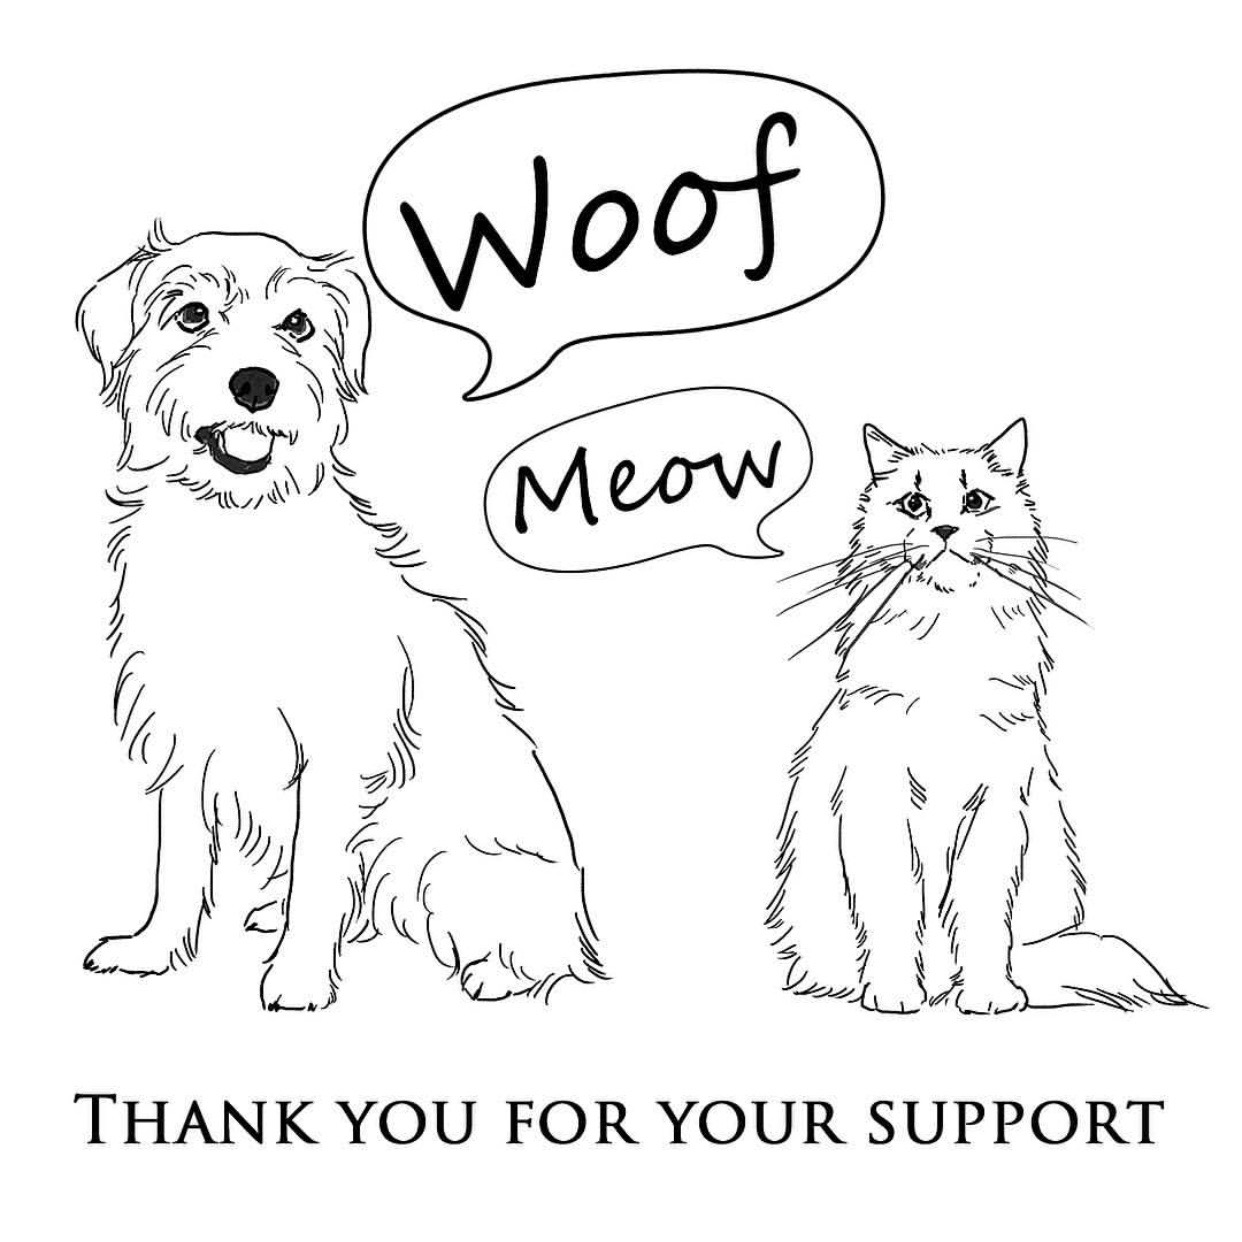 Woof & Meowより寄付についてのお知らせです